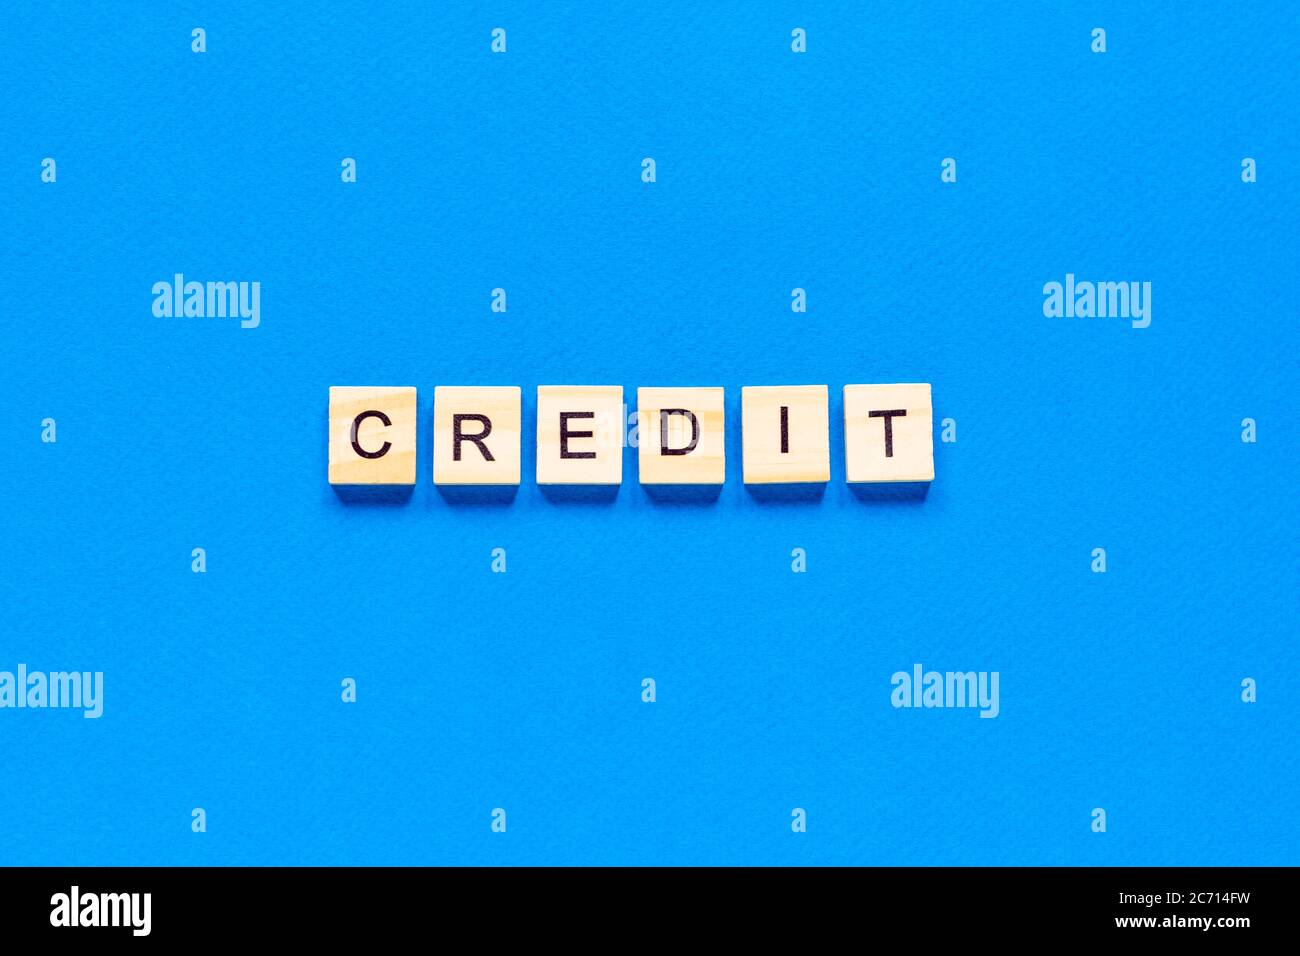 iscrizione di credito in lettere di legno su sfondo blu, disposizione piatta, vista dall'alto, classico colore blu Foto Stock